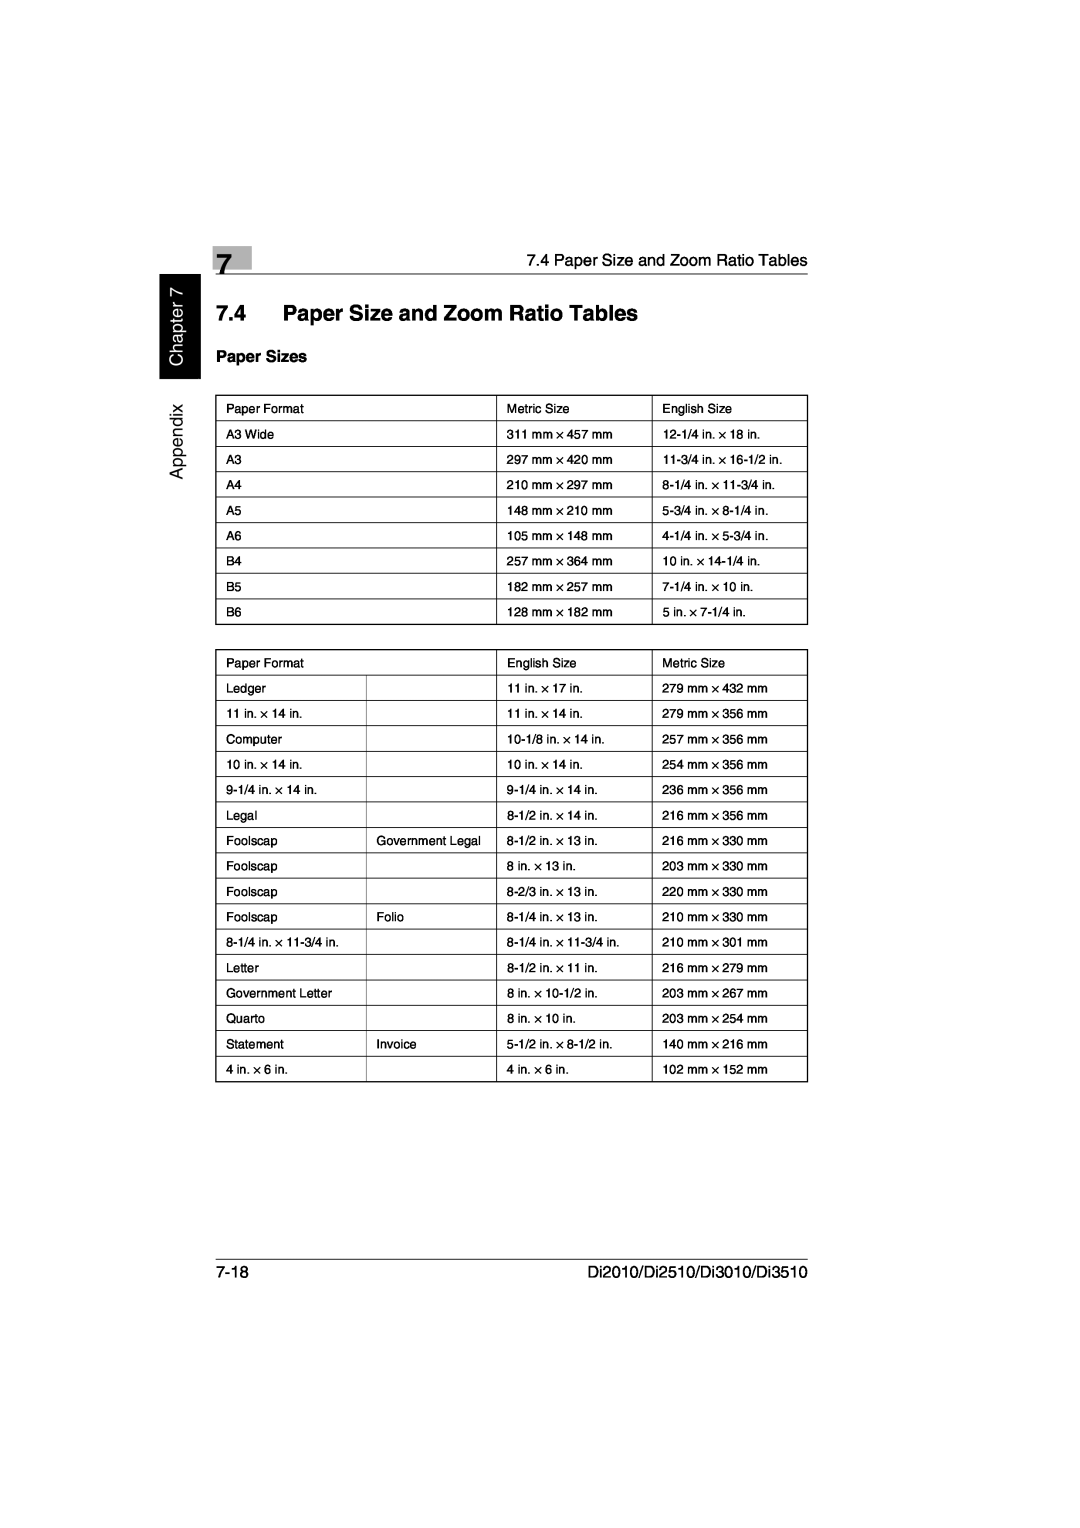 Minolta DI2510, DI2010, DI3010 Paper Size and Zoom Ratio Tables, Appendix Chapter, 7-18, Di2010/Di2510/Di3010/Di3510 